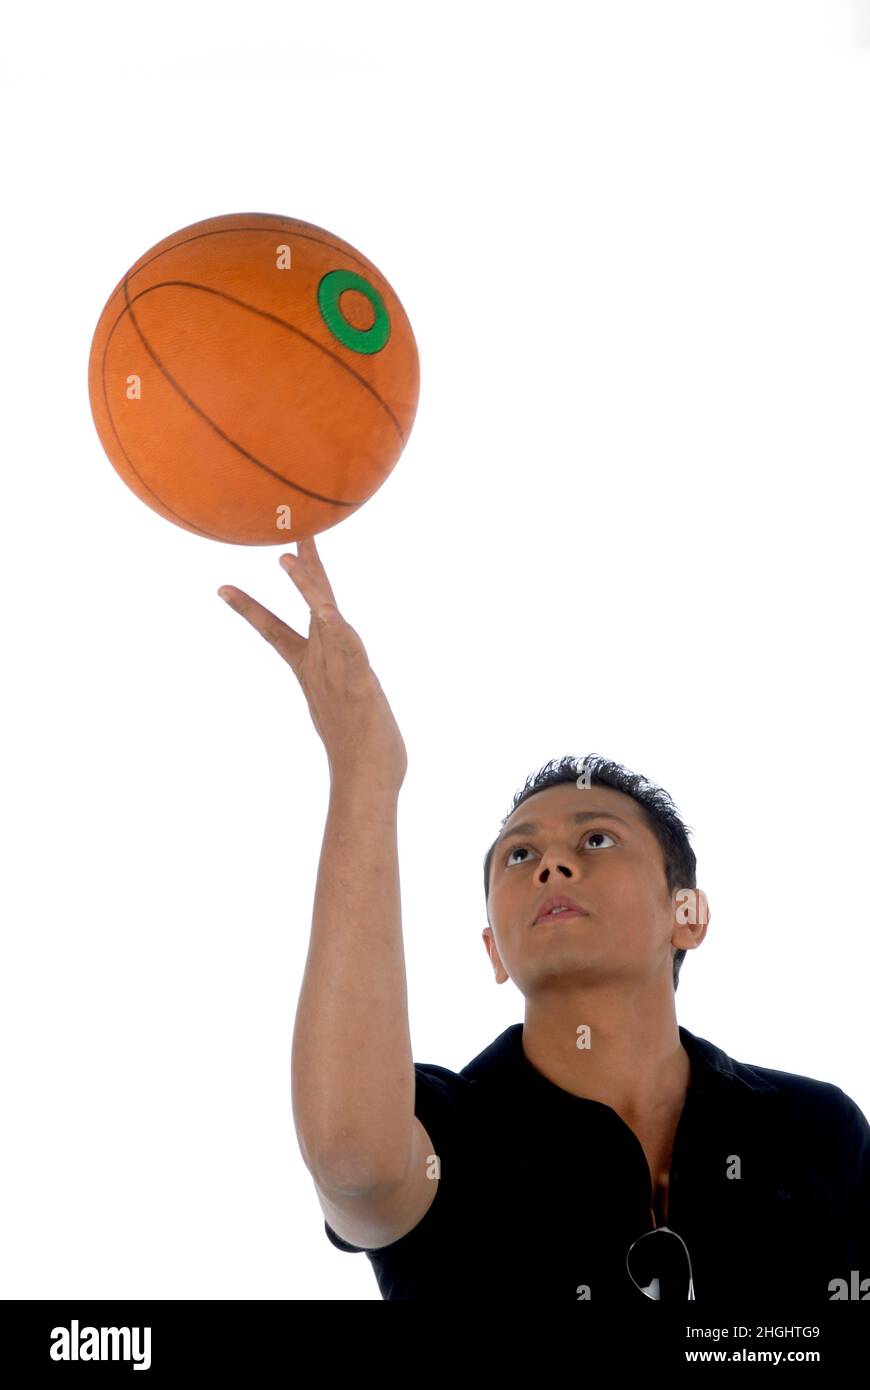 Mumbai; Maharashtra; Inde- Asie; 26 décembre; 2009 - Jeune joueur de basket-ball indien posant avec le basket-ball isolé sur fond blanc Banque D'Images